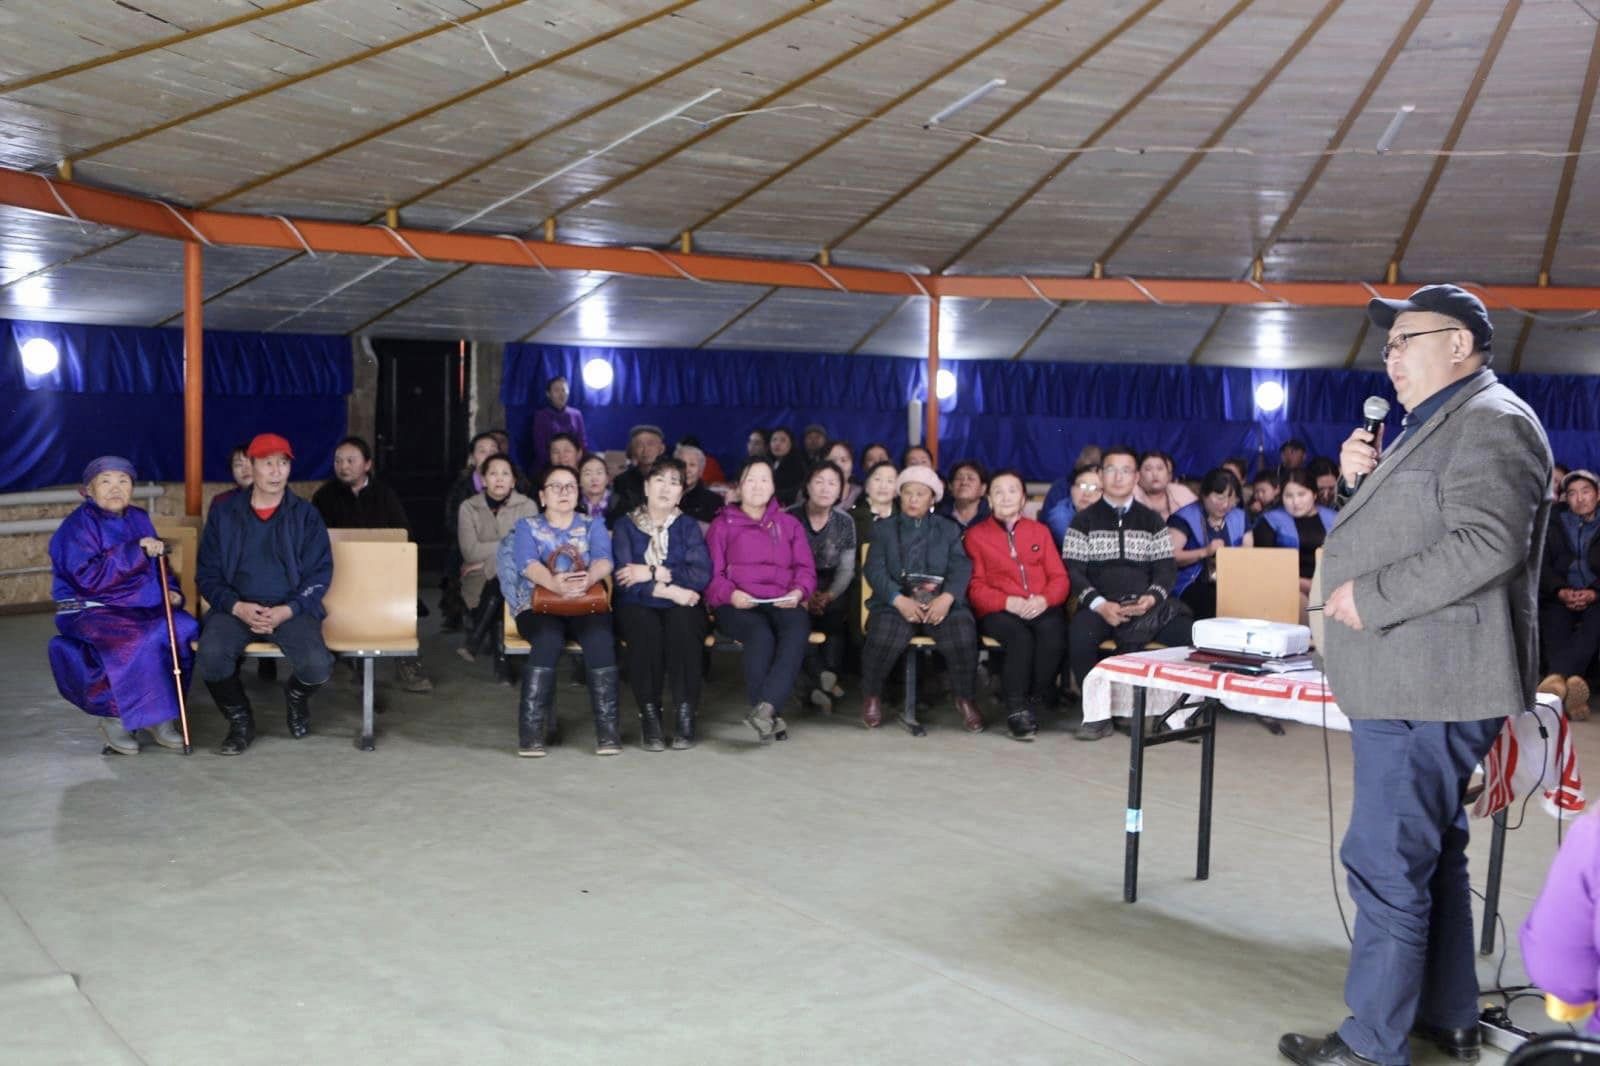 УИХ-ын гишүүн Ц.Туваан Төв аймгийн Аргалант сумын иргэдтэй тайлан уулзалтаа хийлээ